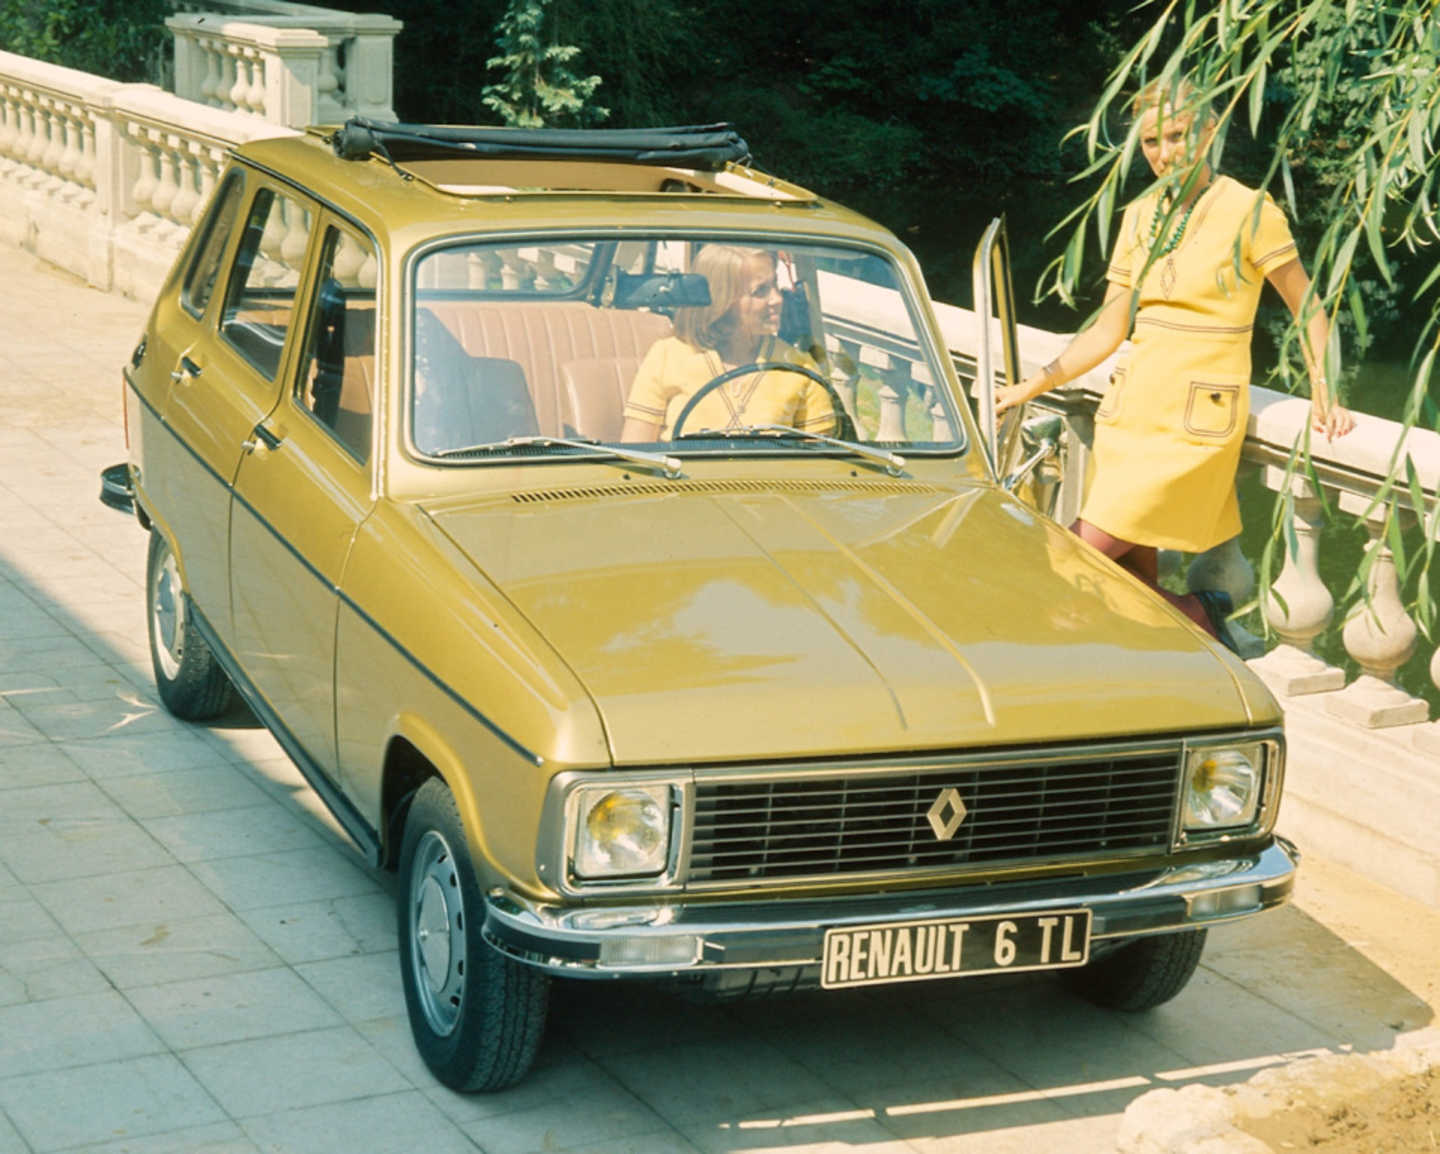 Renault 6 TL jaune de face